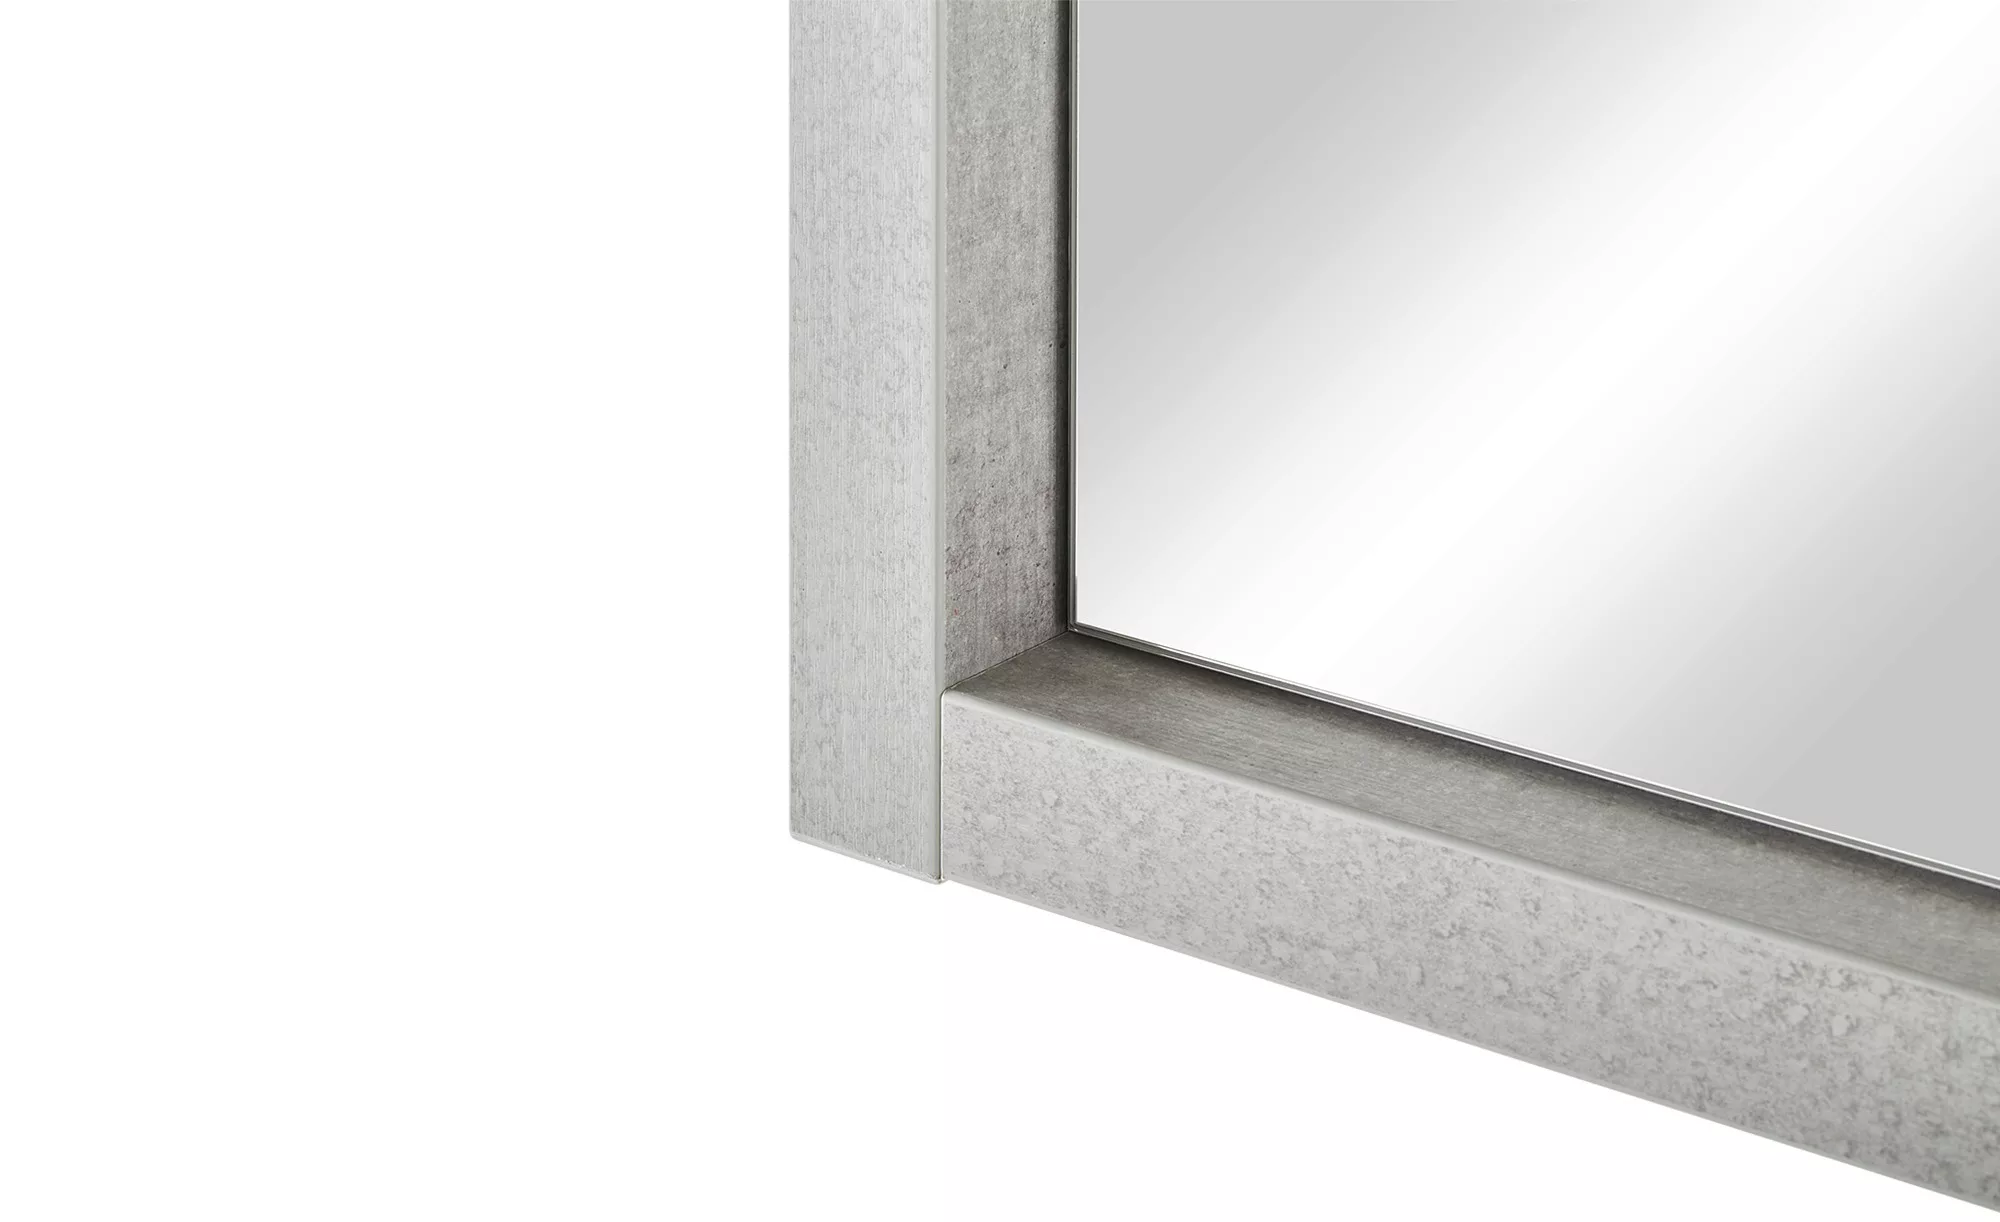 Spiegel  Voltana - grau - 90 cm - 60 cm - 6 cm - Sconto günstig online kaufen